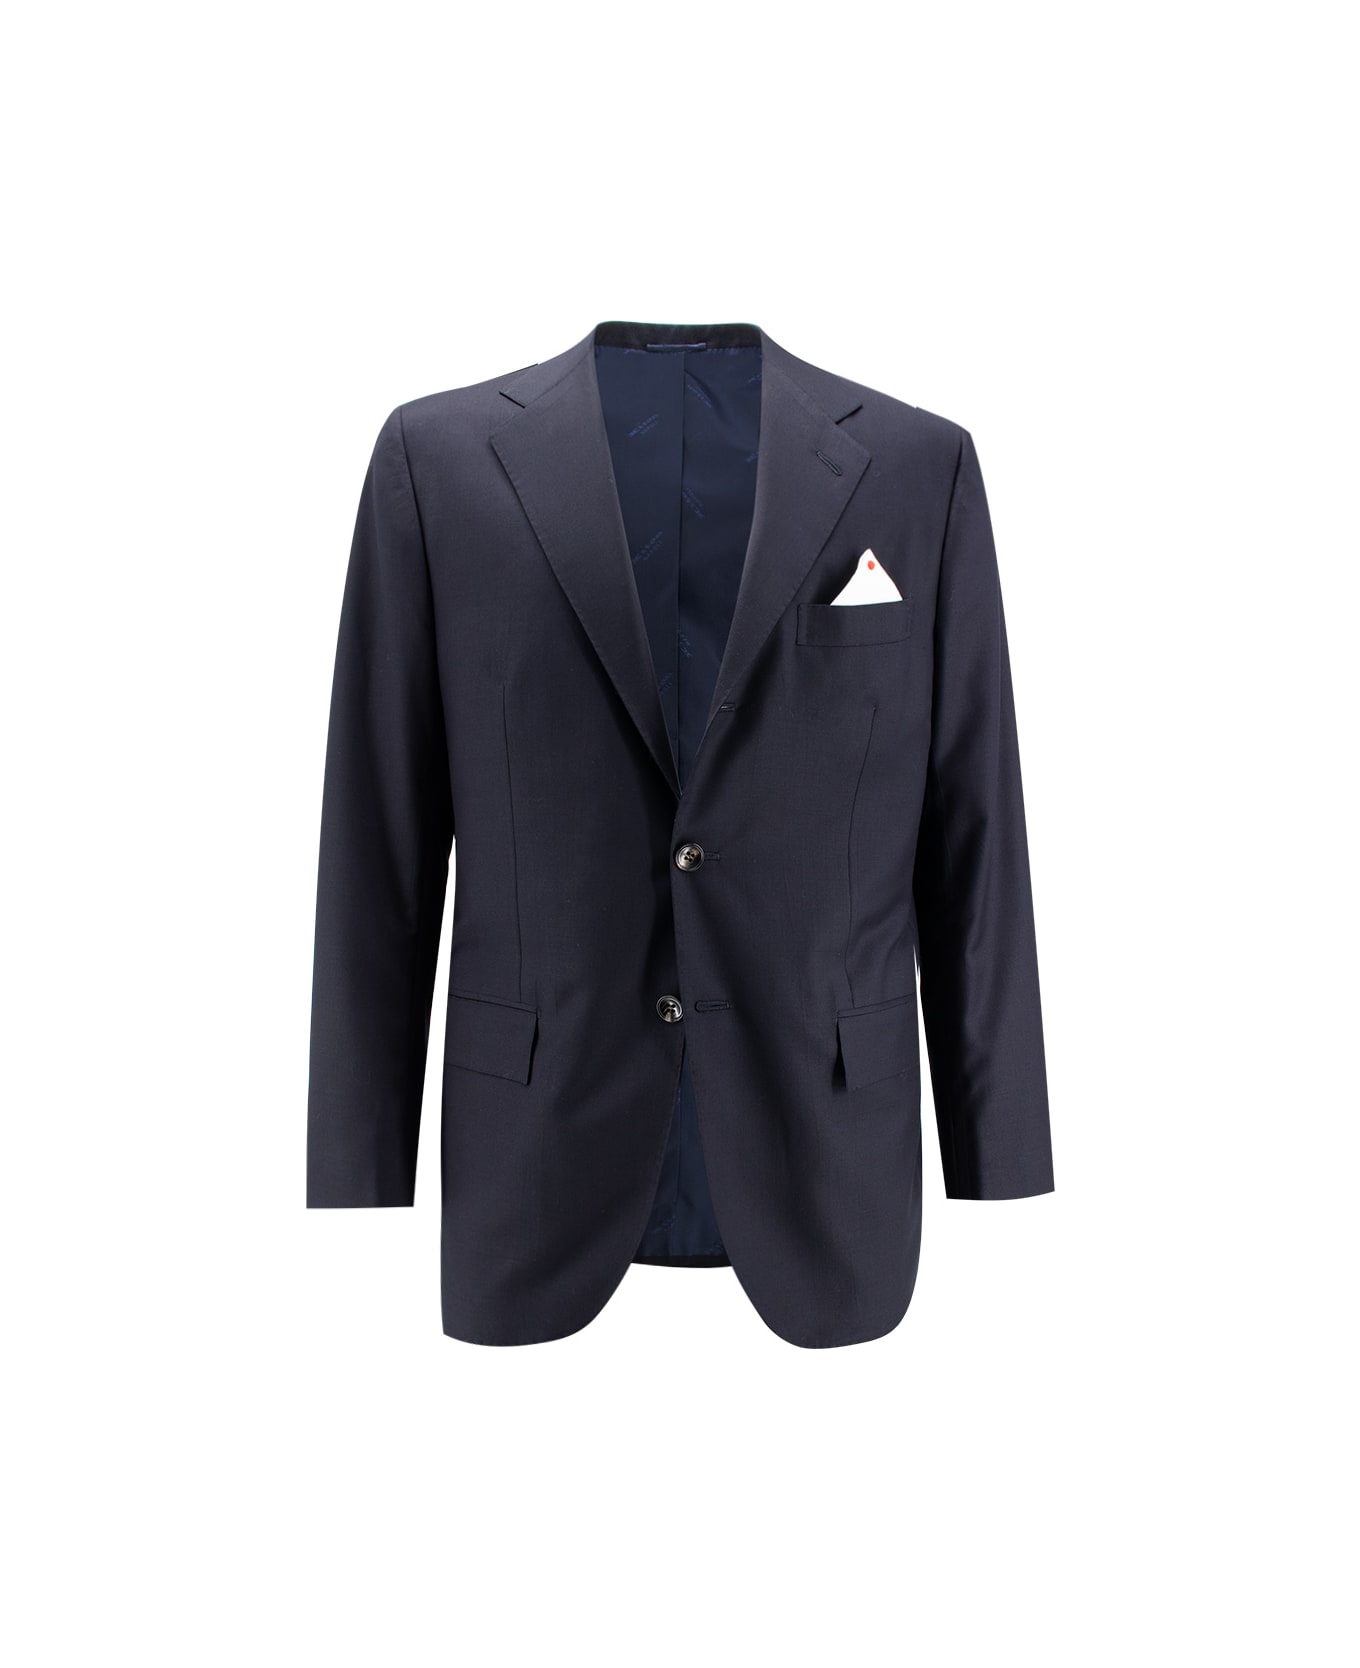 Kiton Suit - NAVY BLUE